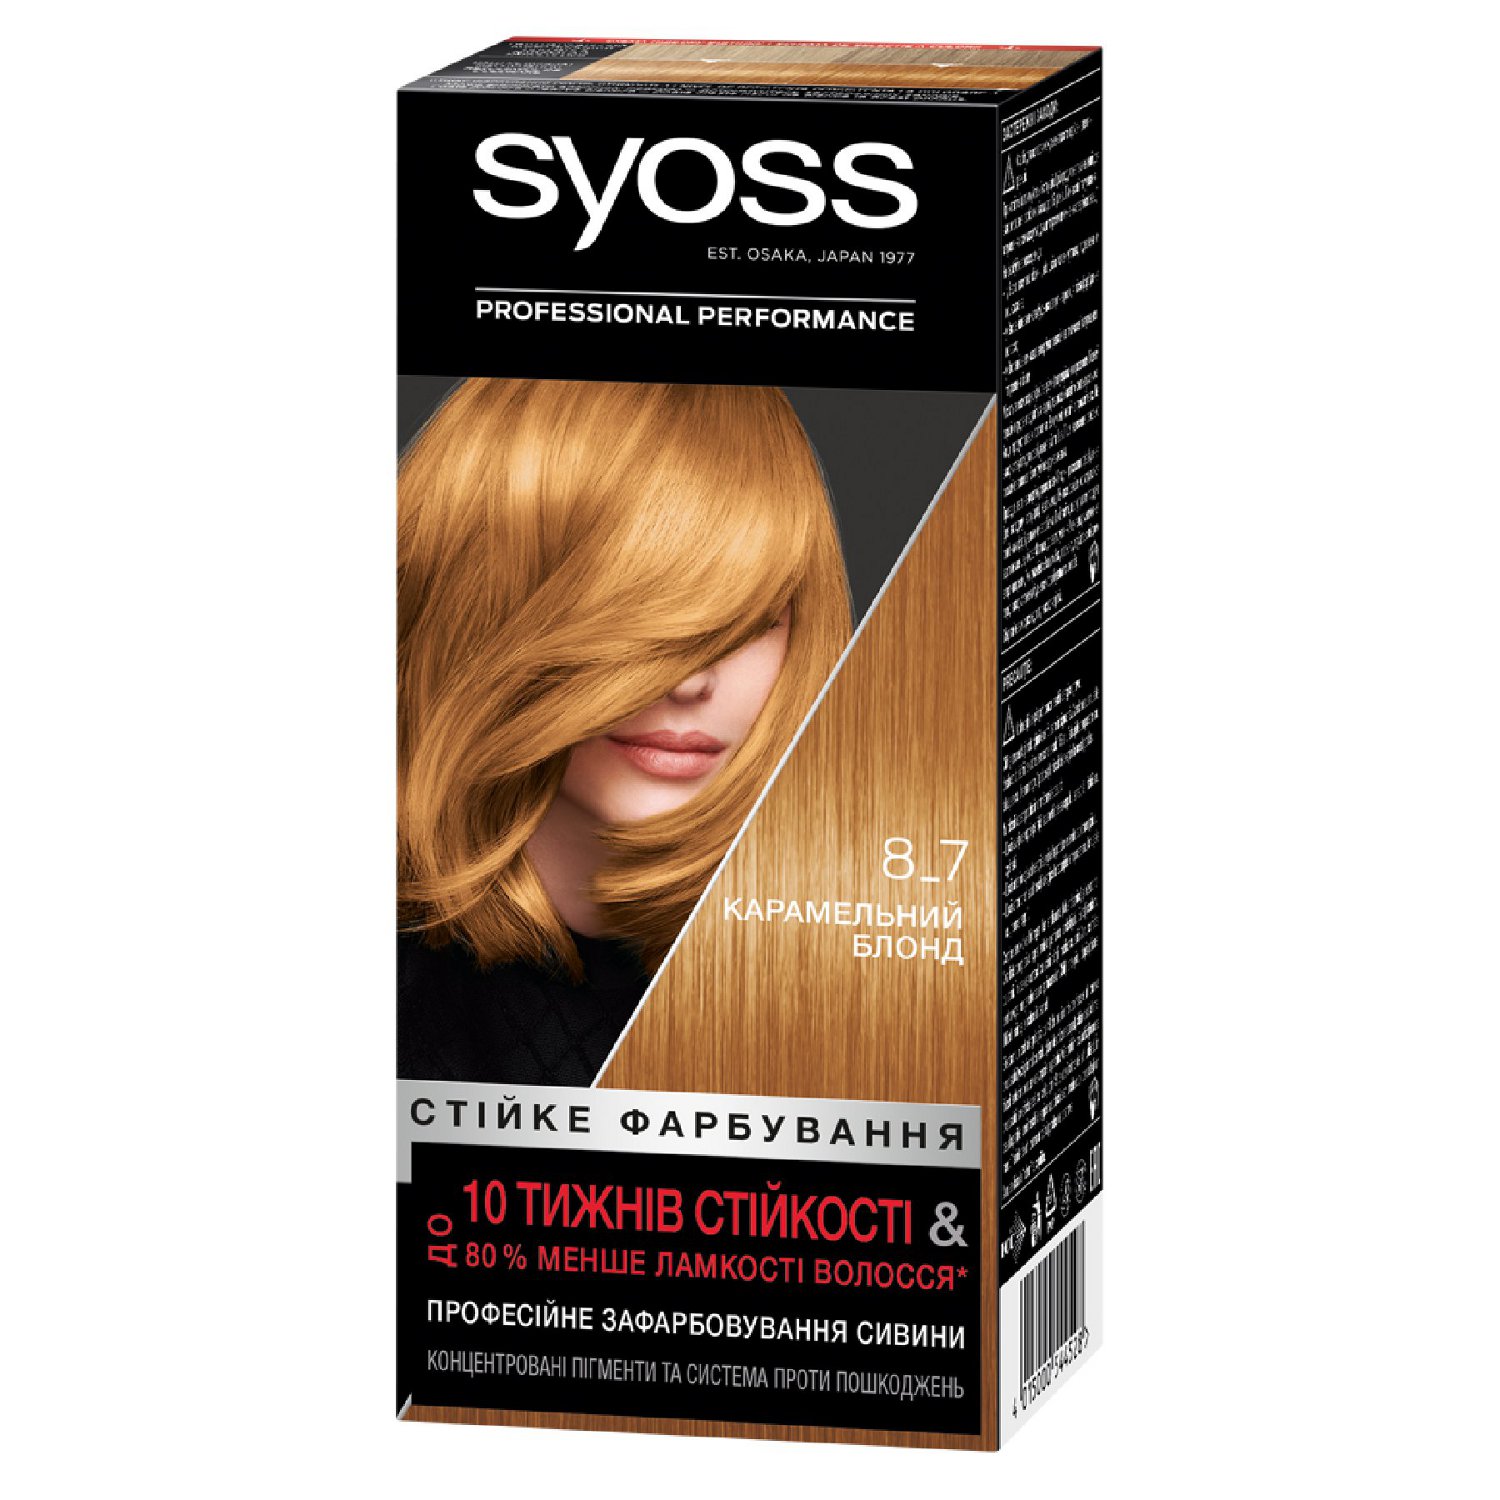 Фарба для волосся Syoss 8-7 Карамельний блонд, 115 мл - фото 1